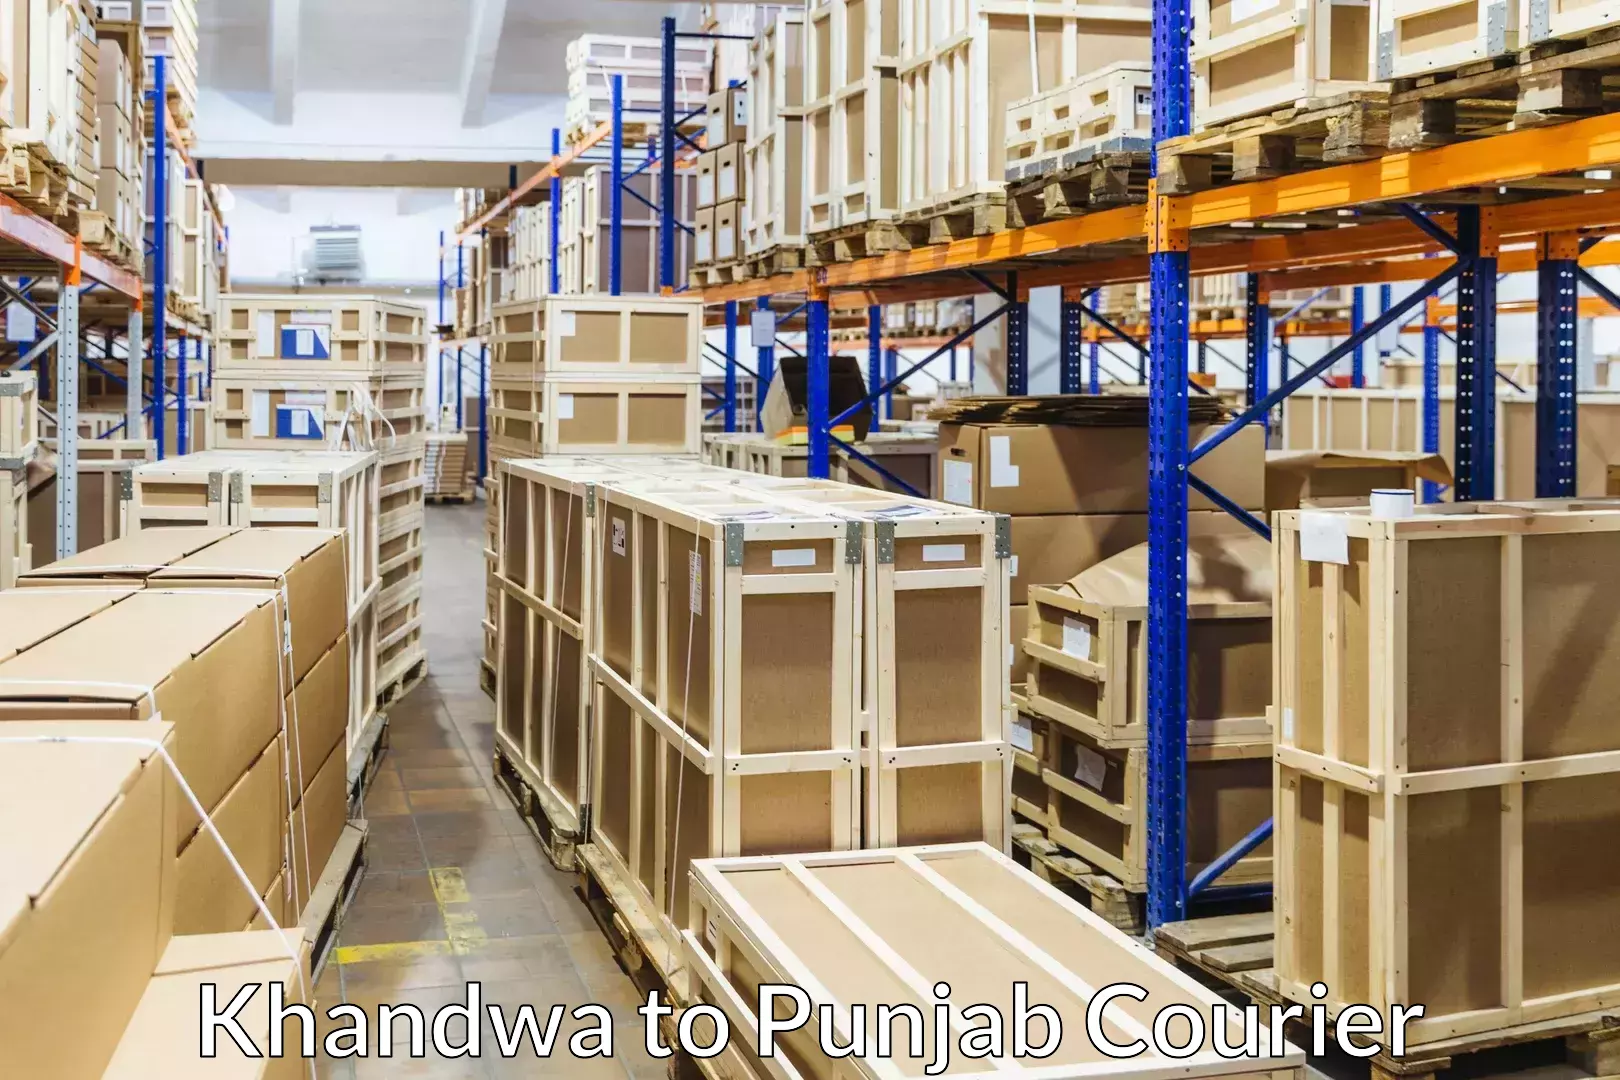 Furniture transport services Khandwa to Punjab